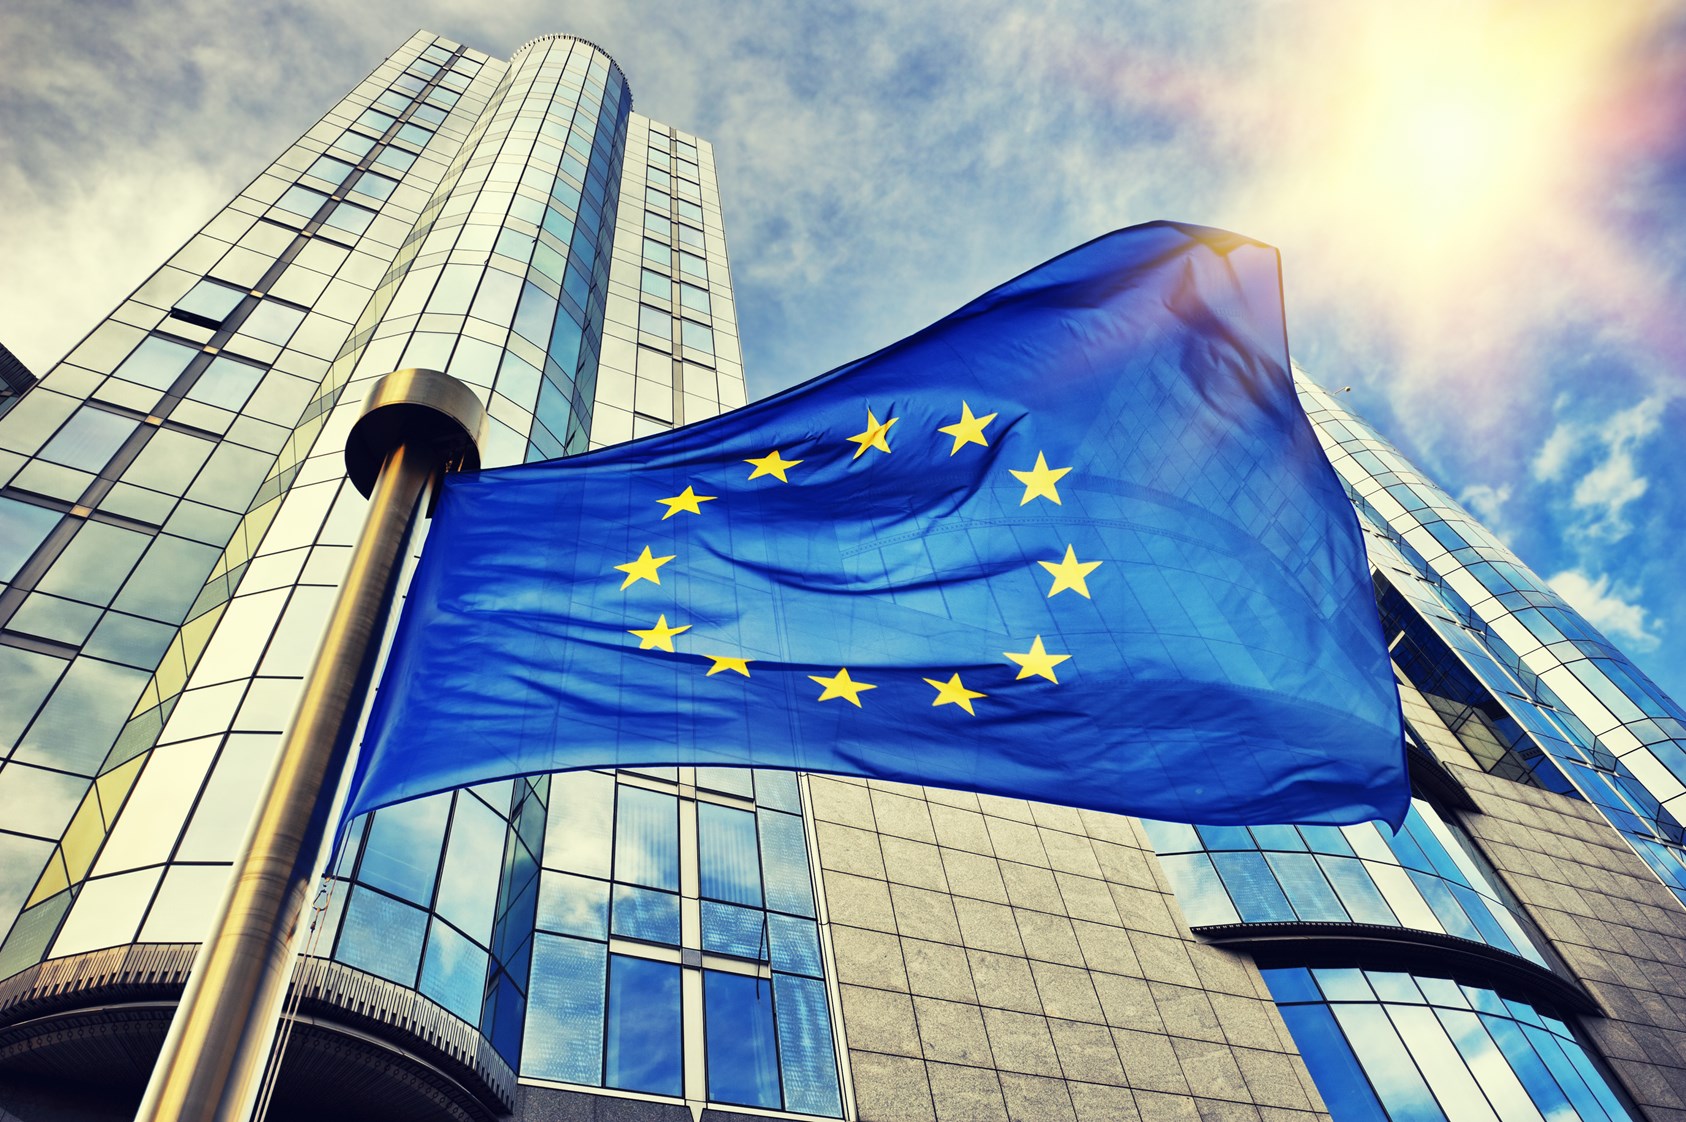 ES padės šalims narėms sumažinti šiltnamio efektą kovoje su klimato kaita - Liudas Mažylis